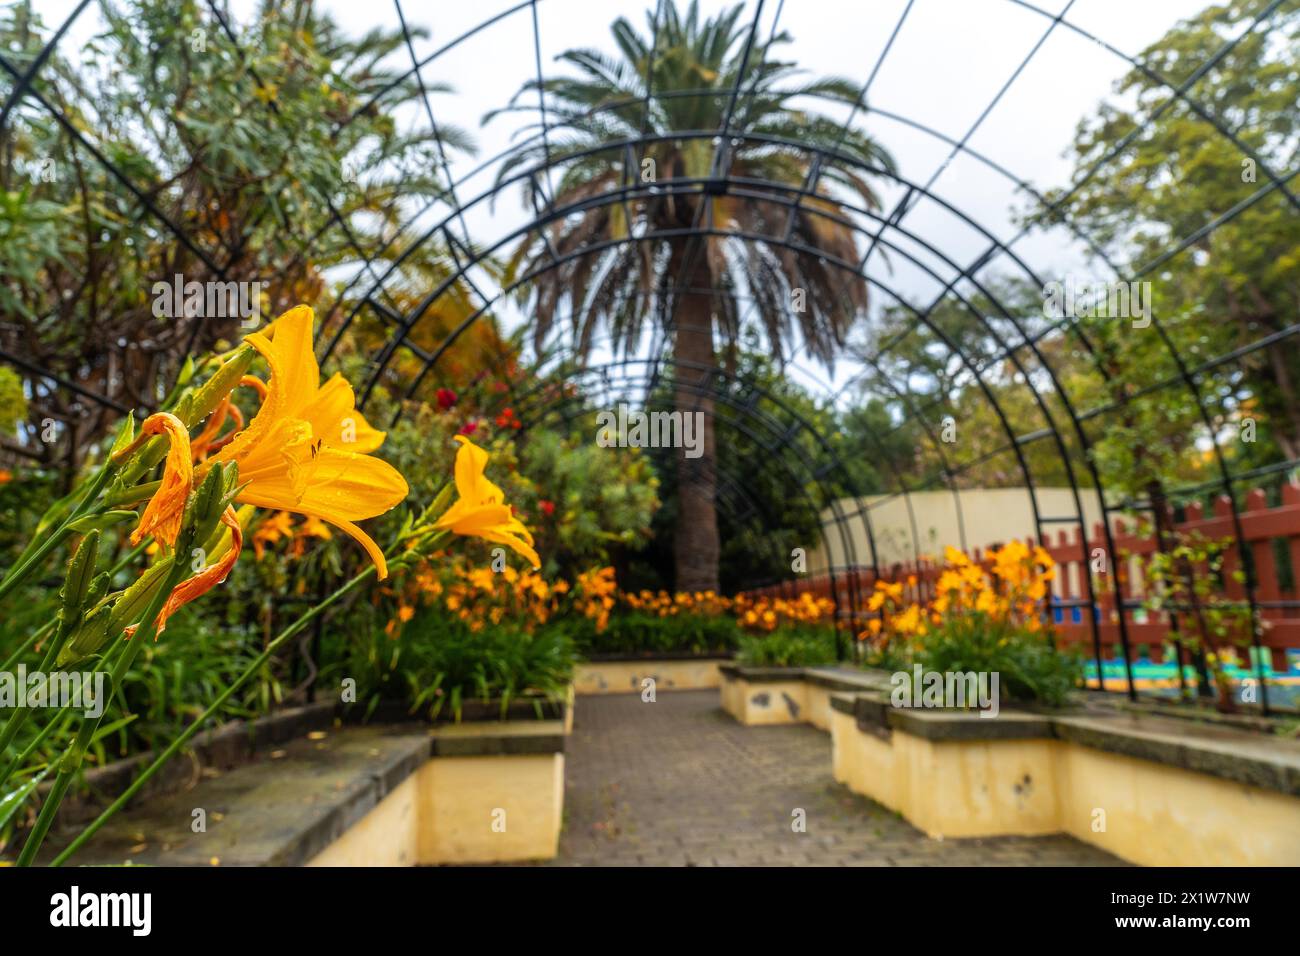 Schöner Weg in einem botanischen Garten, nachhaltiges Tourismuskonzept in Arucas, Gran Canaria. Spanien Stockfoto